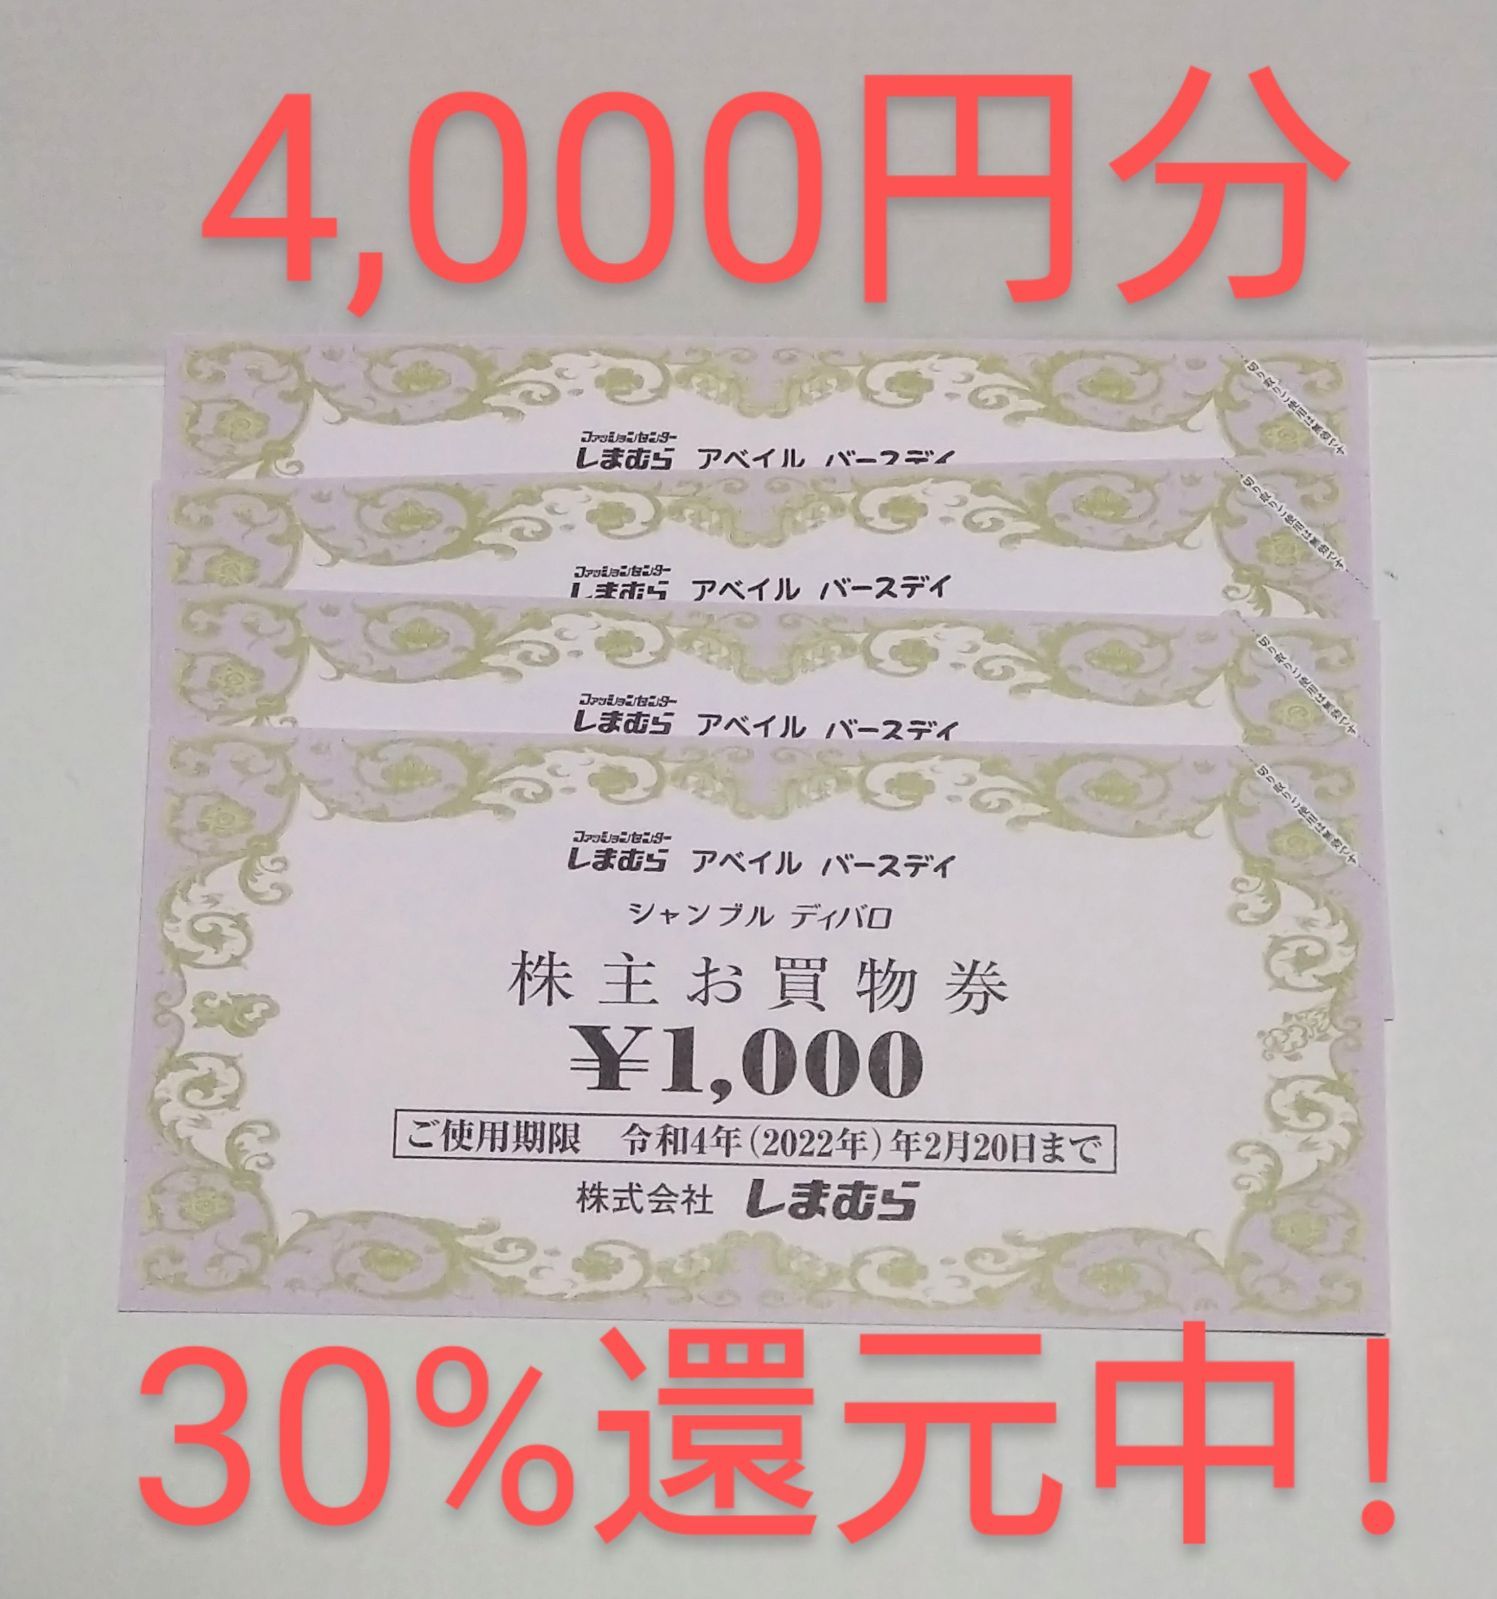 しまむら 株主優待券 4000円分 アベイル シャンブル - 優待券/割引券